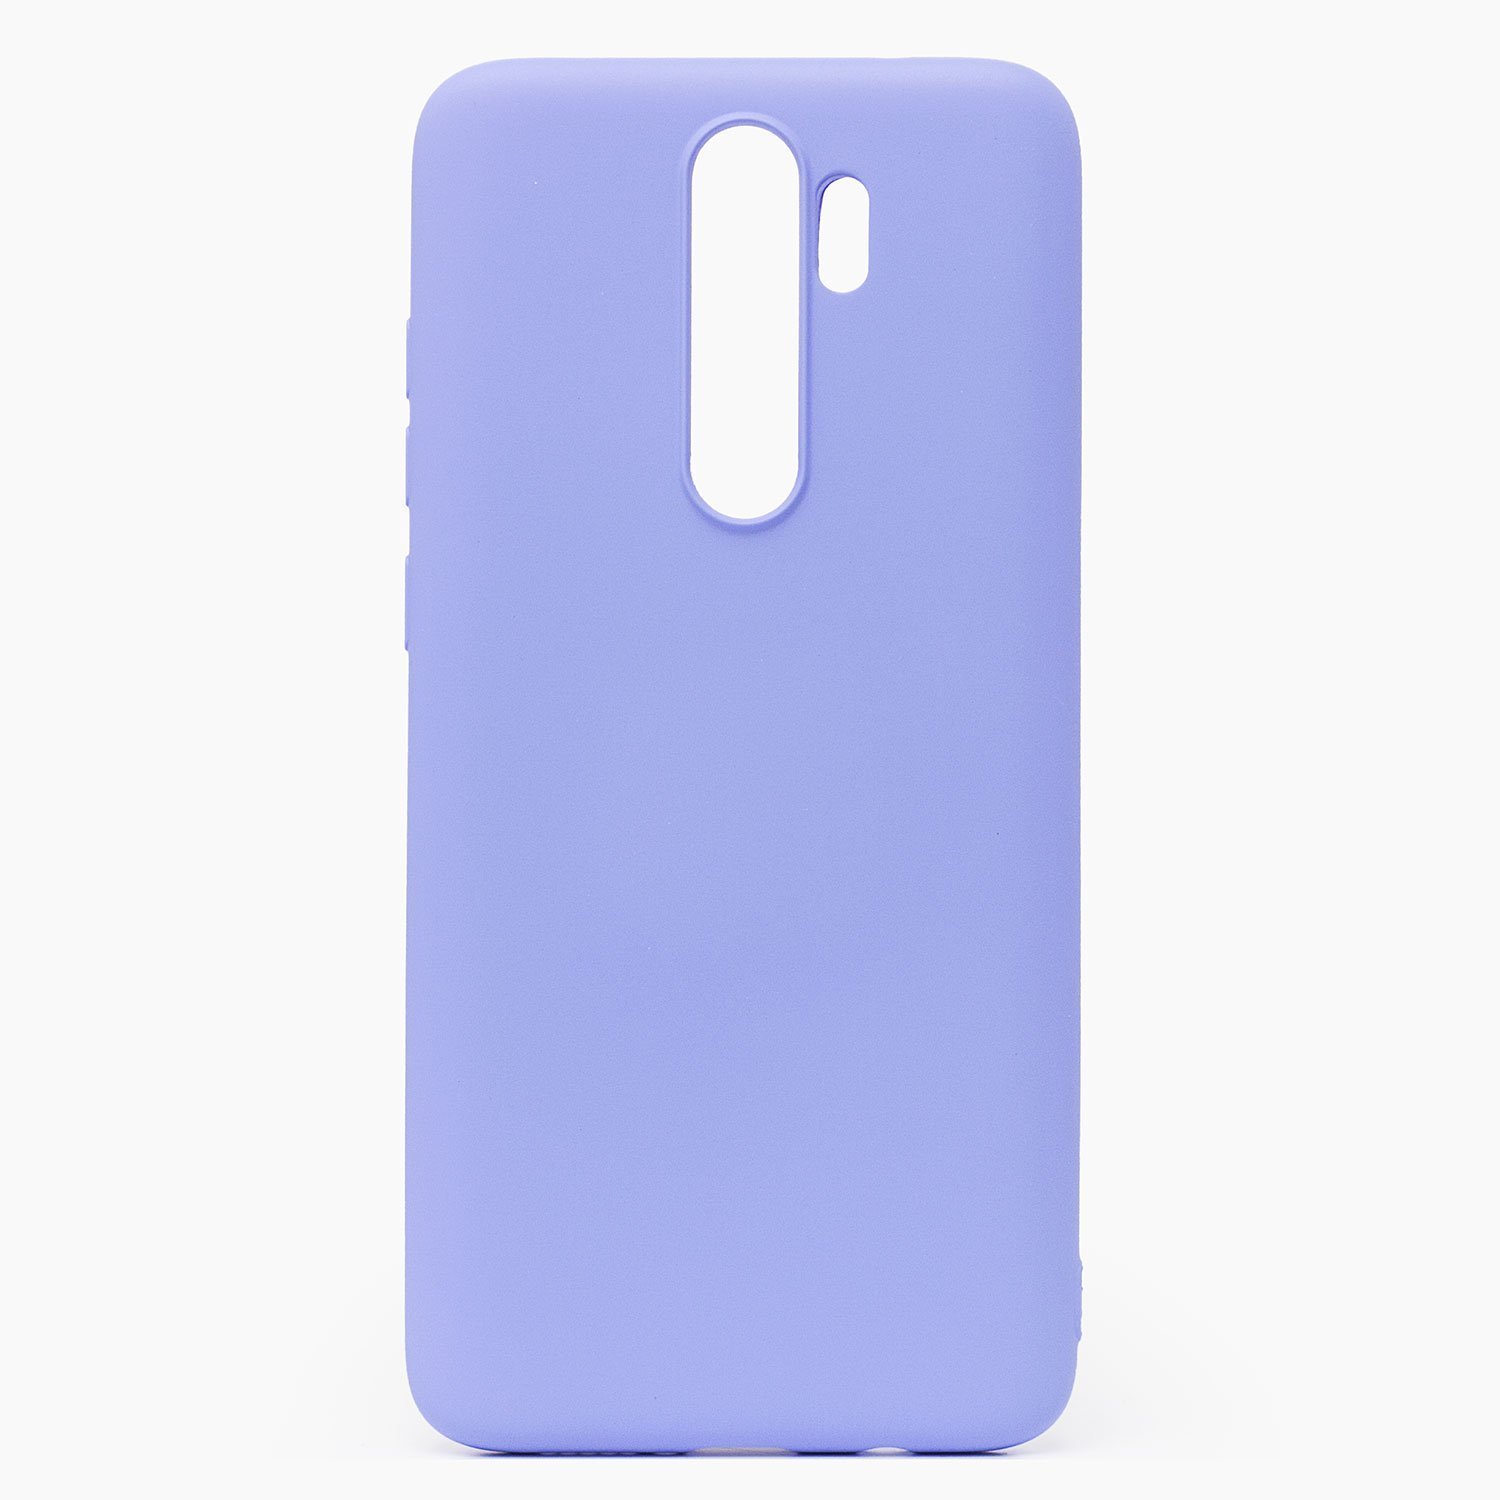 Чехол-накладка Activ Original Design для смартфона Xiaomi Redmi Note 8 Pro, soft-touch, светло-фиолетовый (115700)